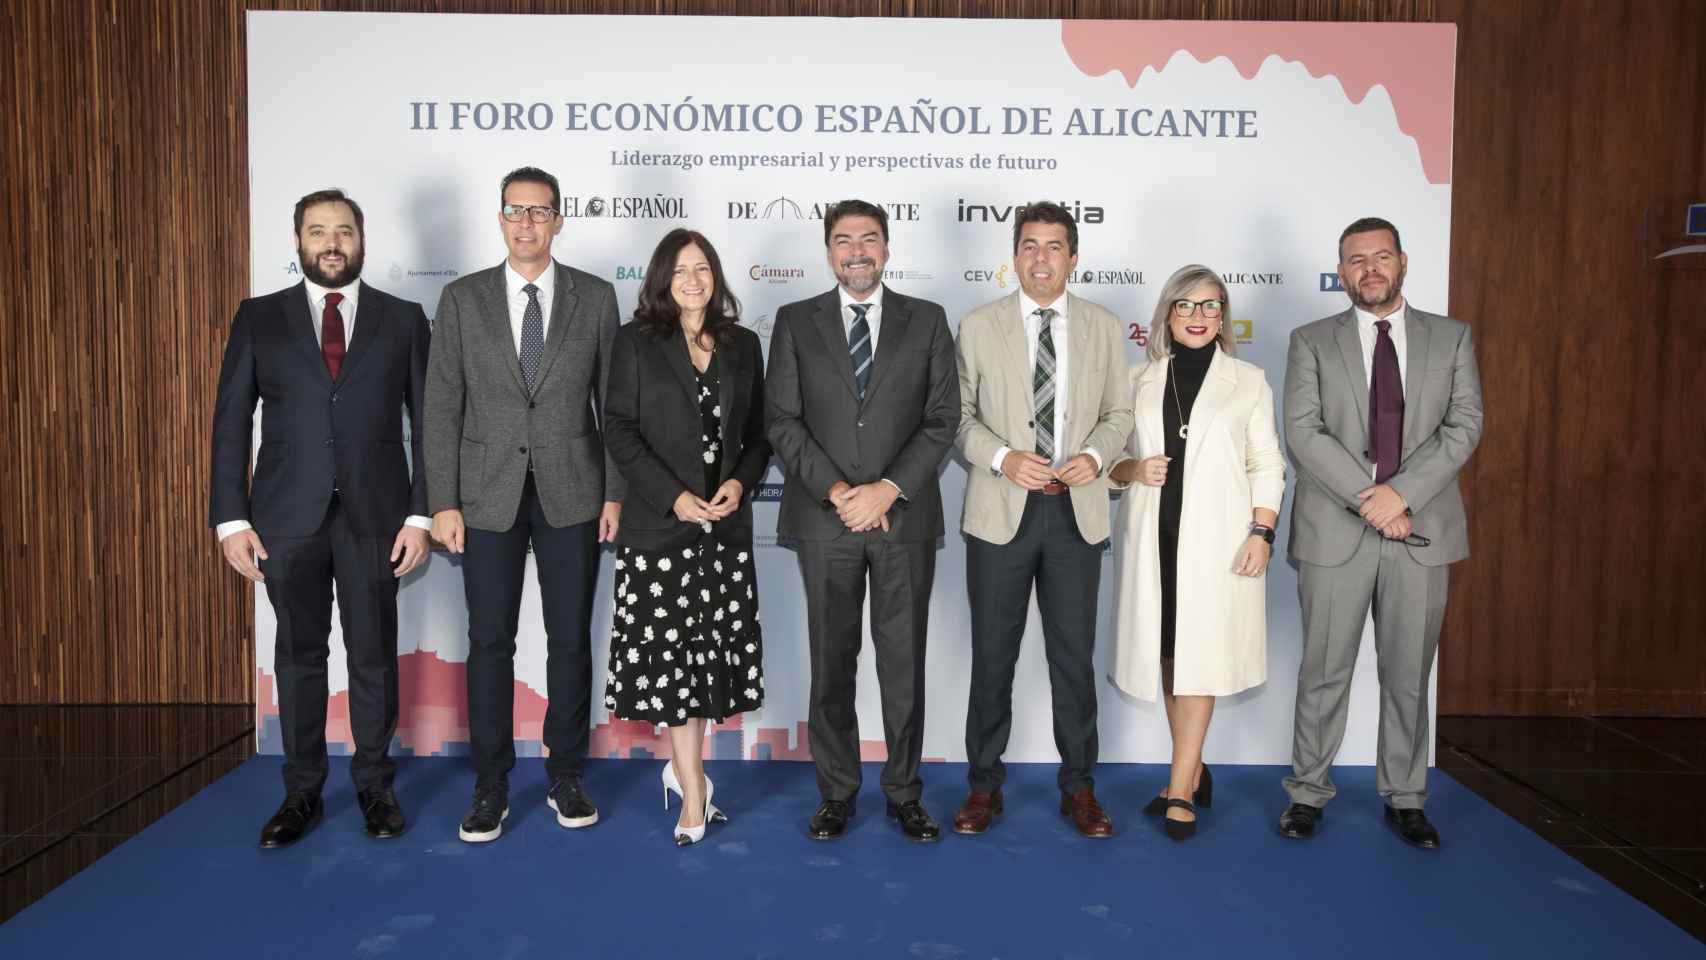 II Foro Económico Español de Alicante ‘Liderazgo empresarial y perspectivas de futuro’